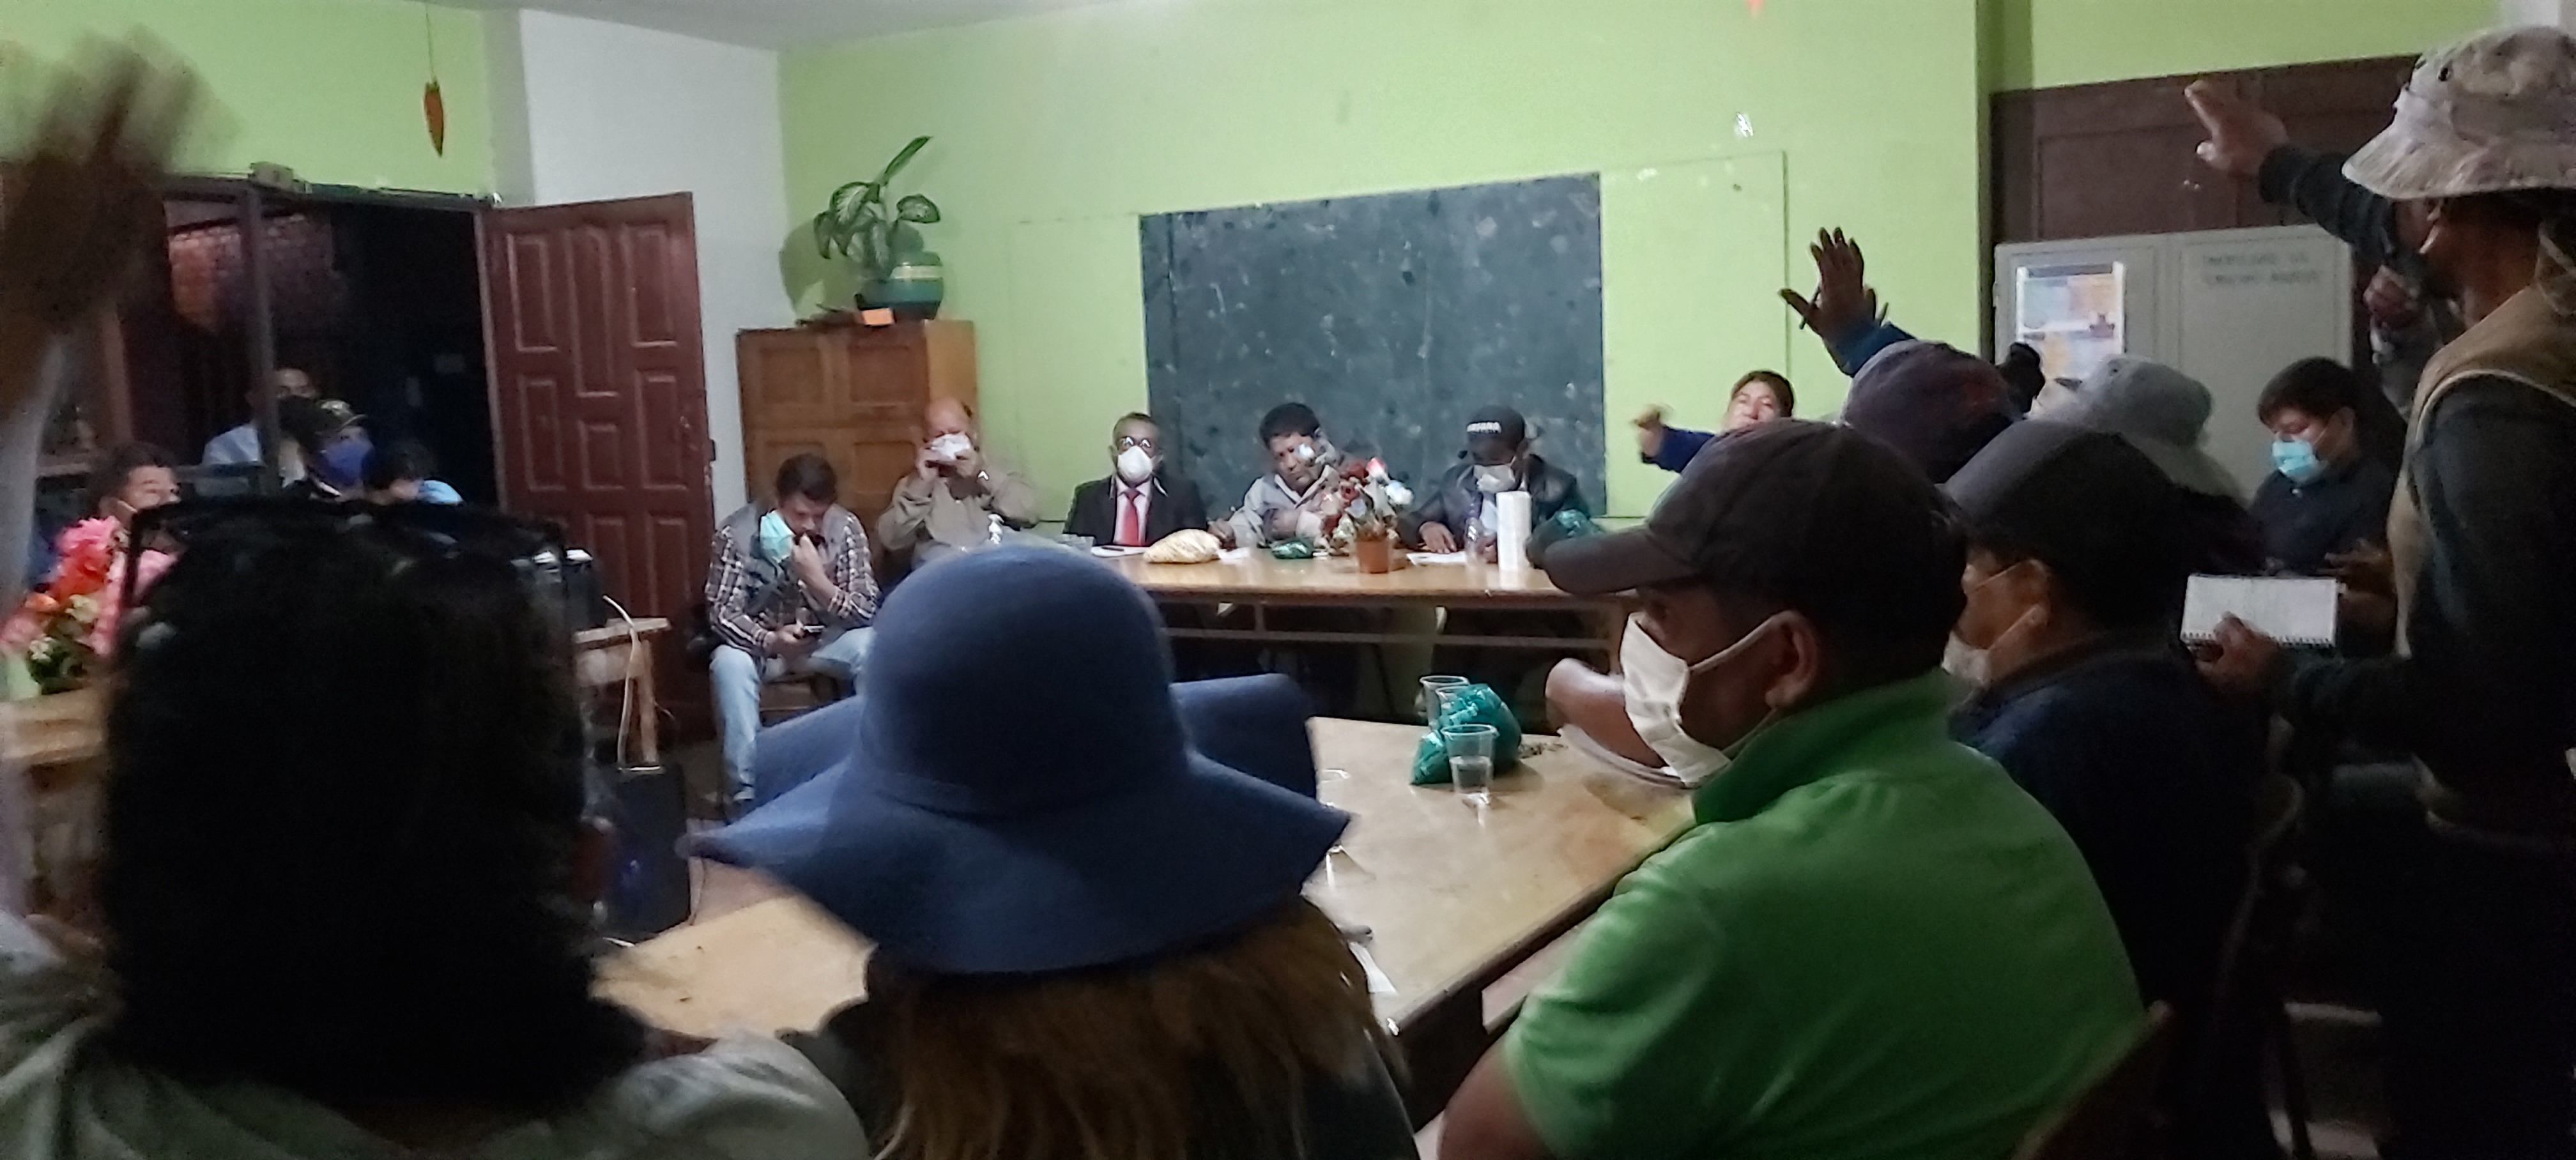 Defensoría del Pueblo observa falta de voluntad del Gobierno para resolver el conflicto en K’ara K’ara en Cochabamba